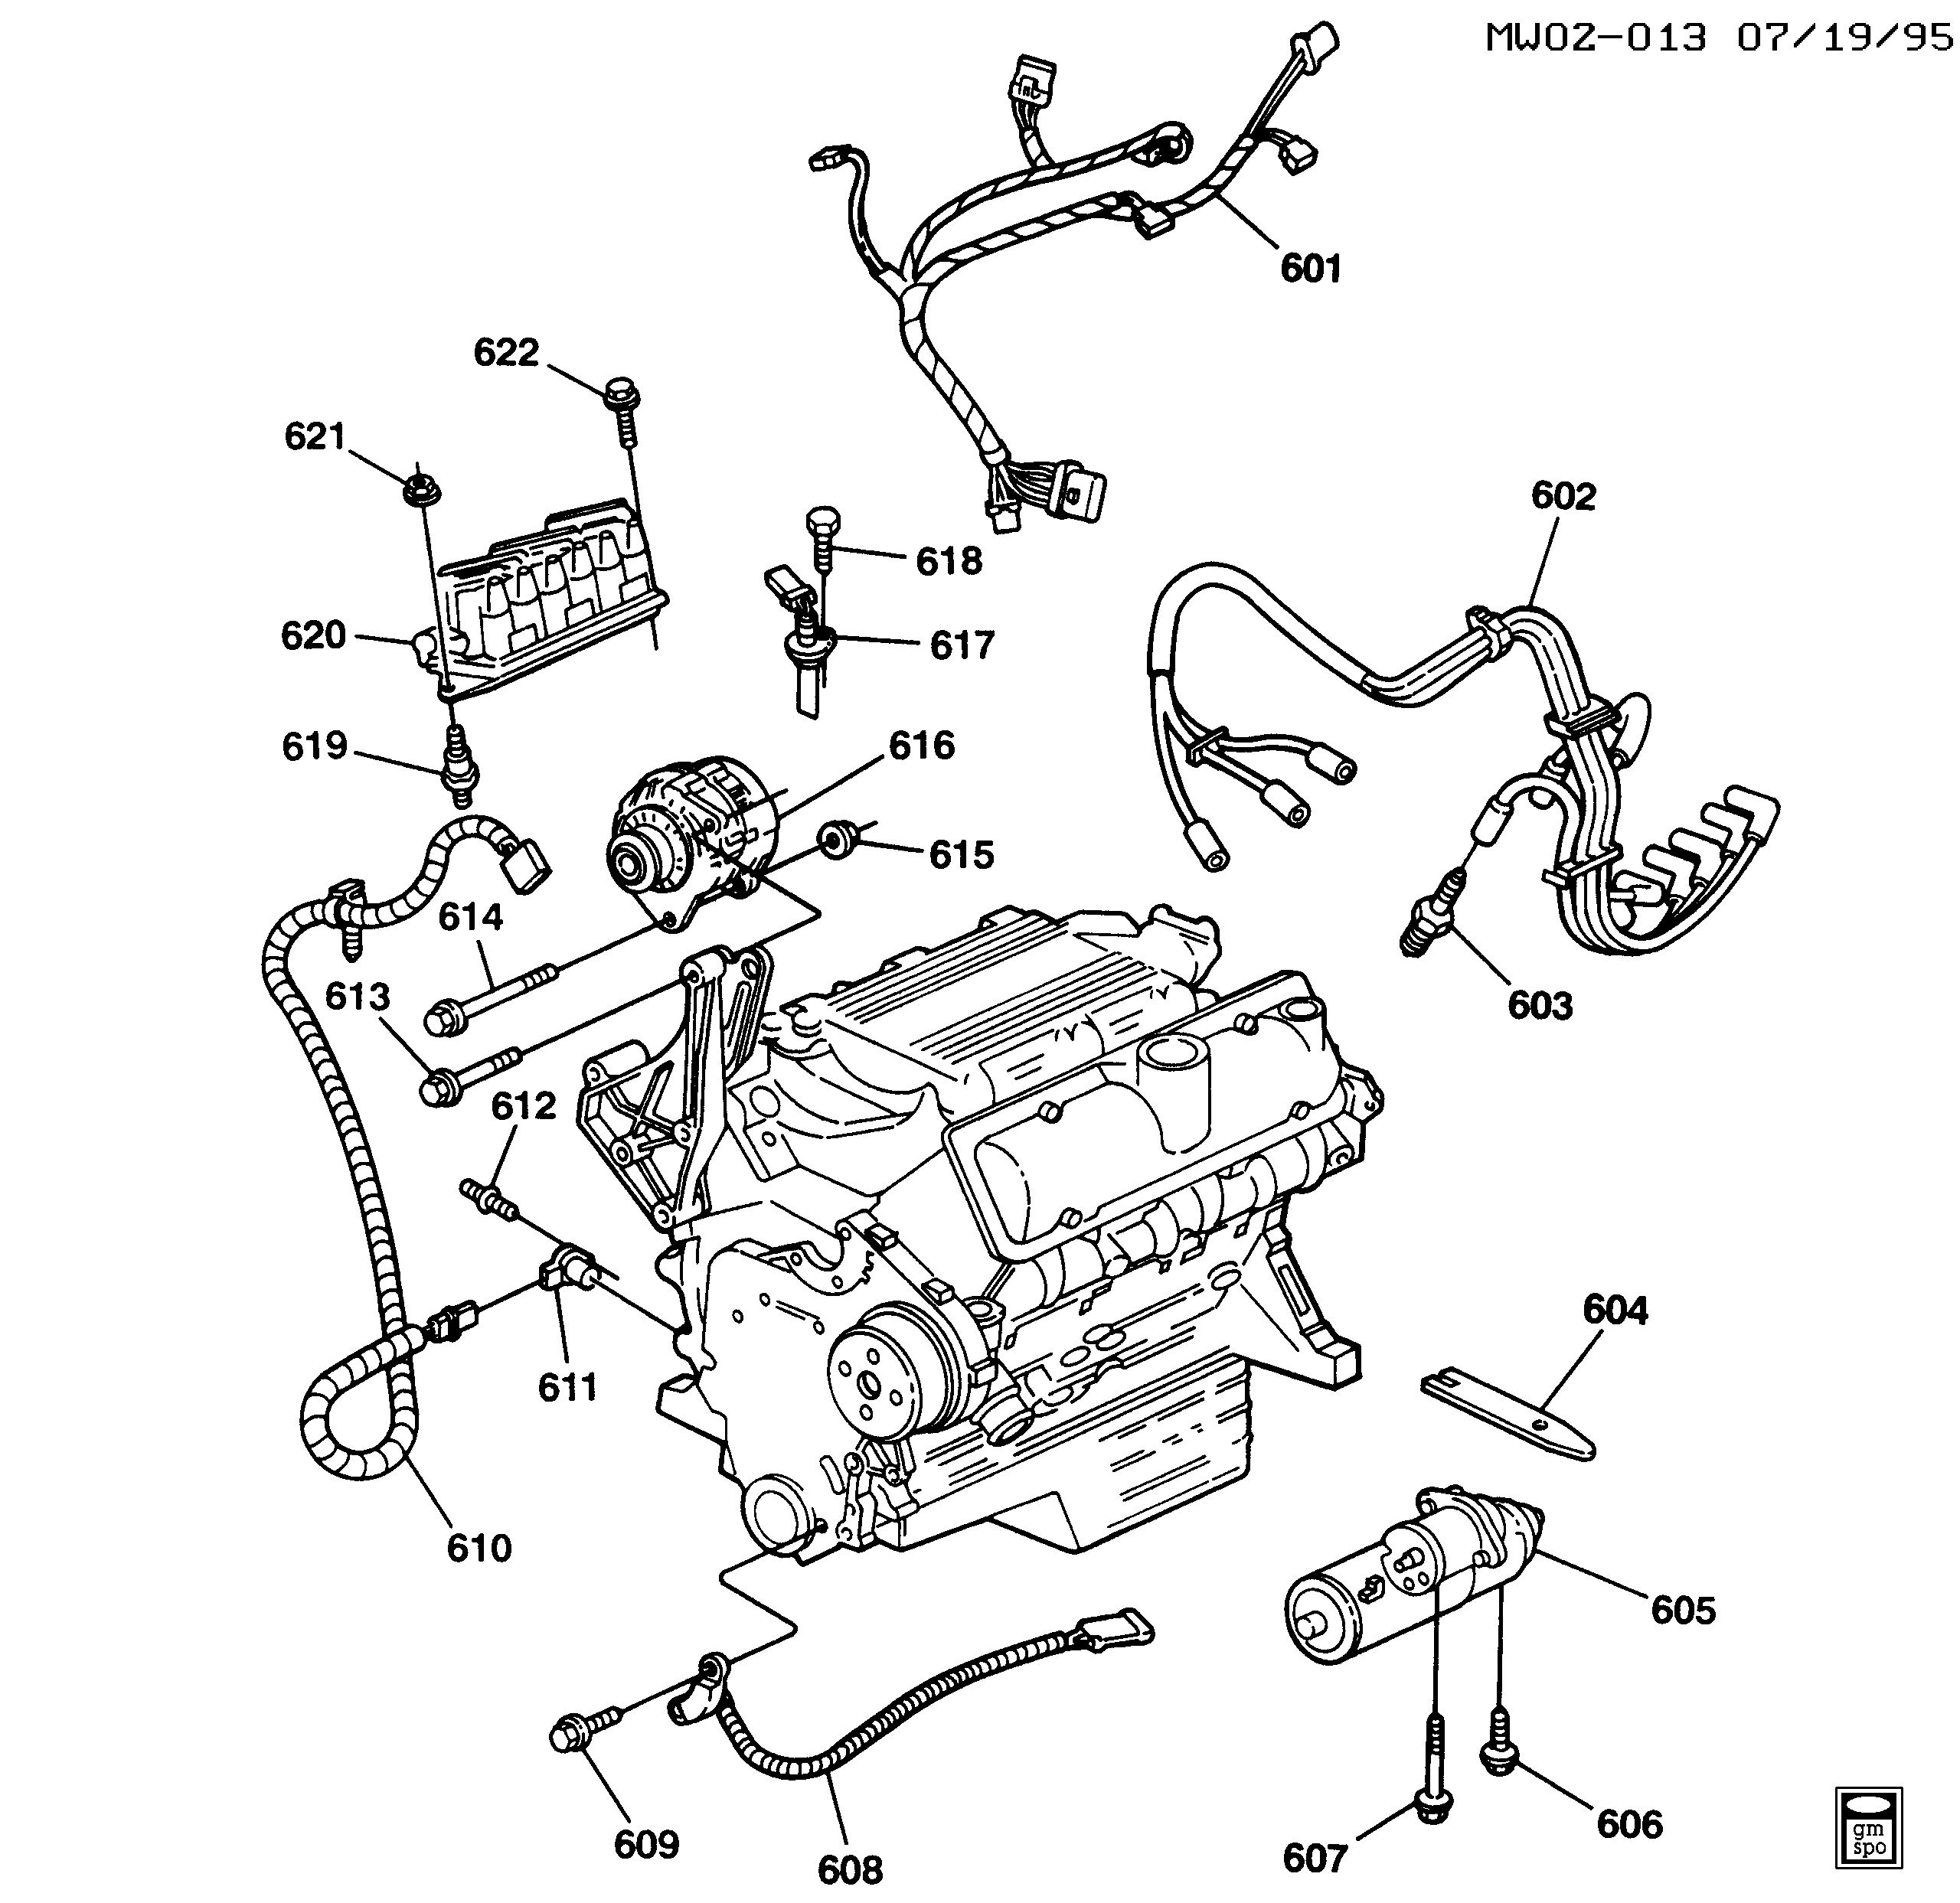 1997-1998 W ENGINE ELECTRICAL (L82/3.1M)